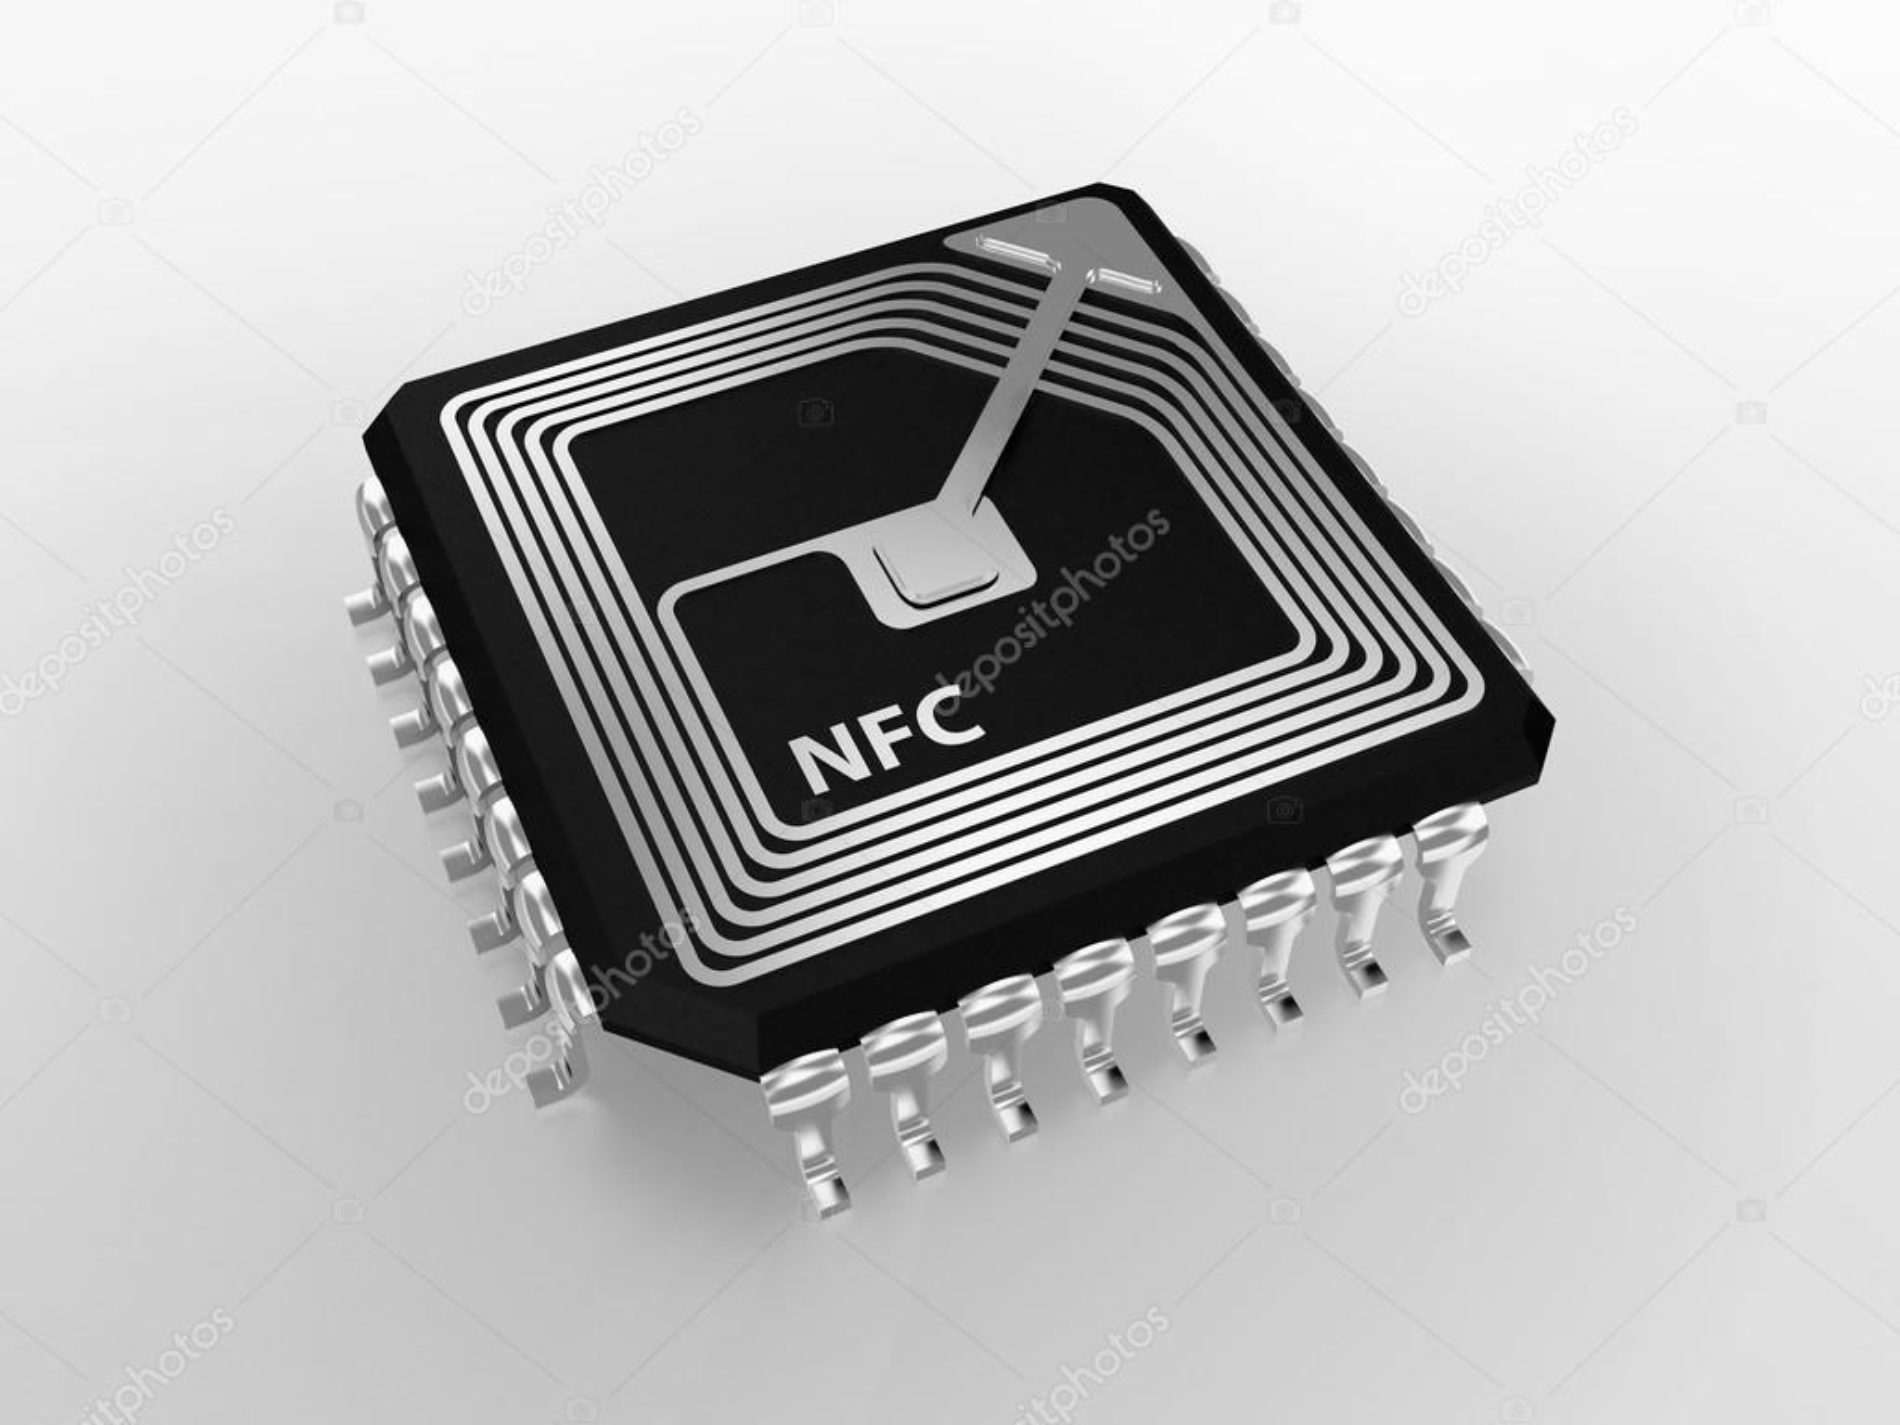 El chip NFC de los iPhone gracias a iOS 12 nos permitirá hacer más cosas.